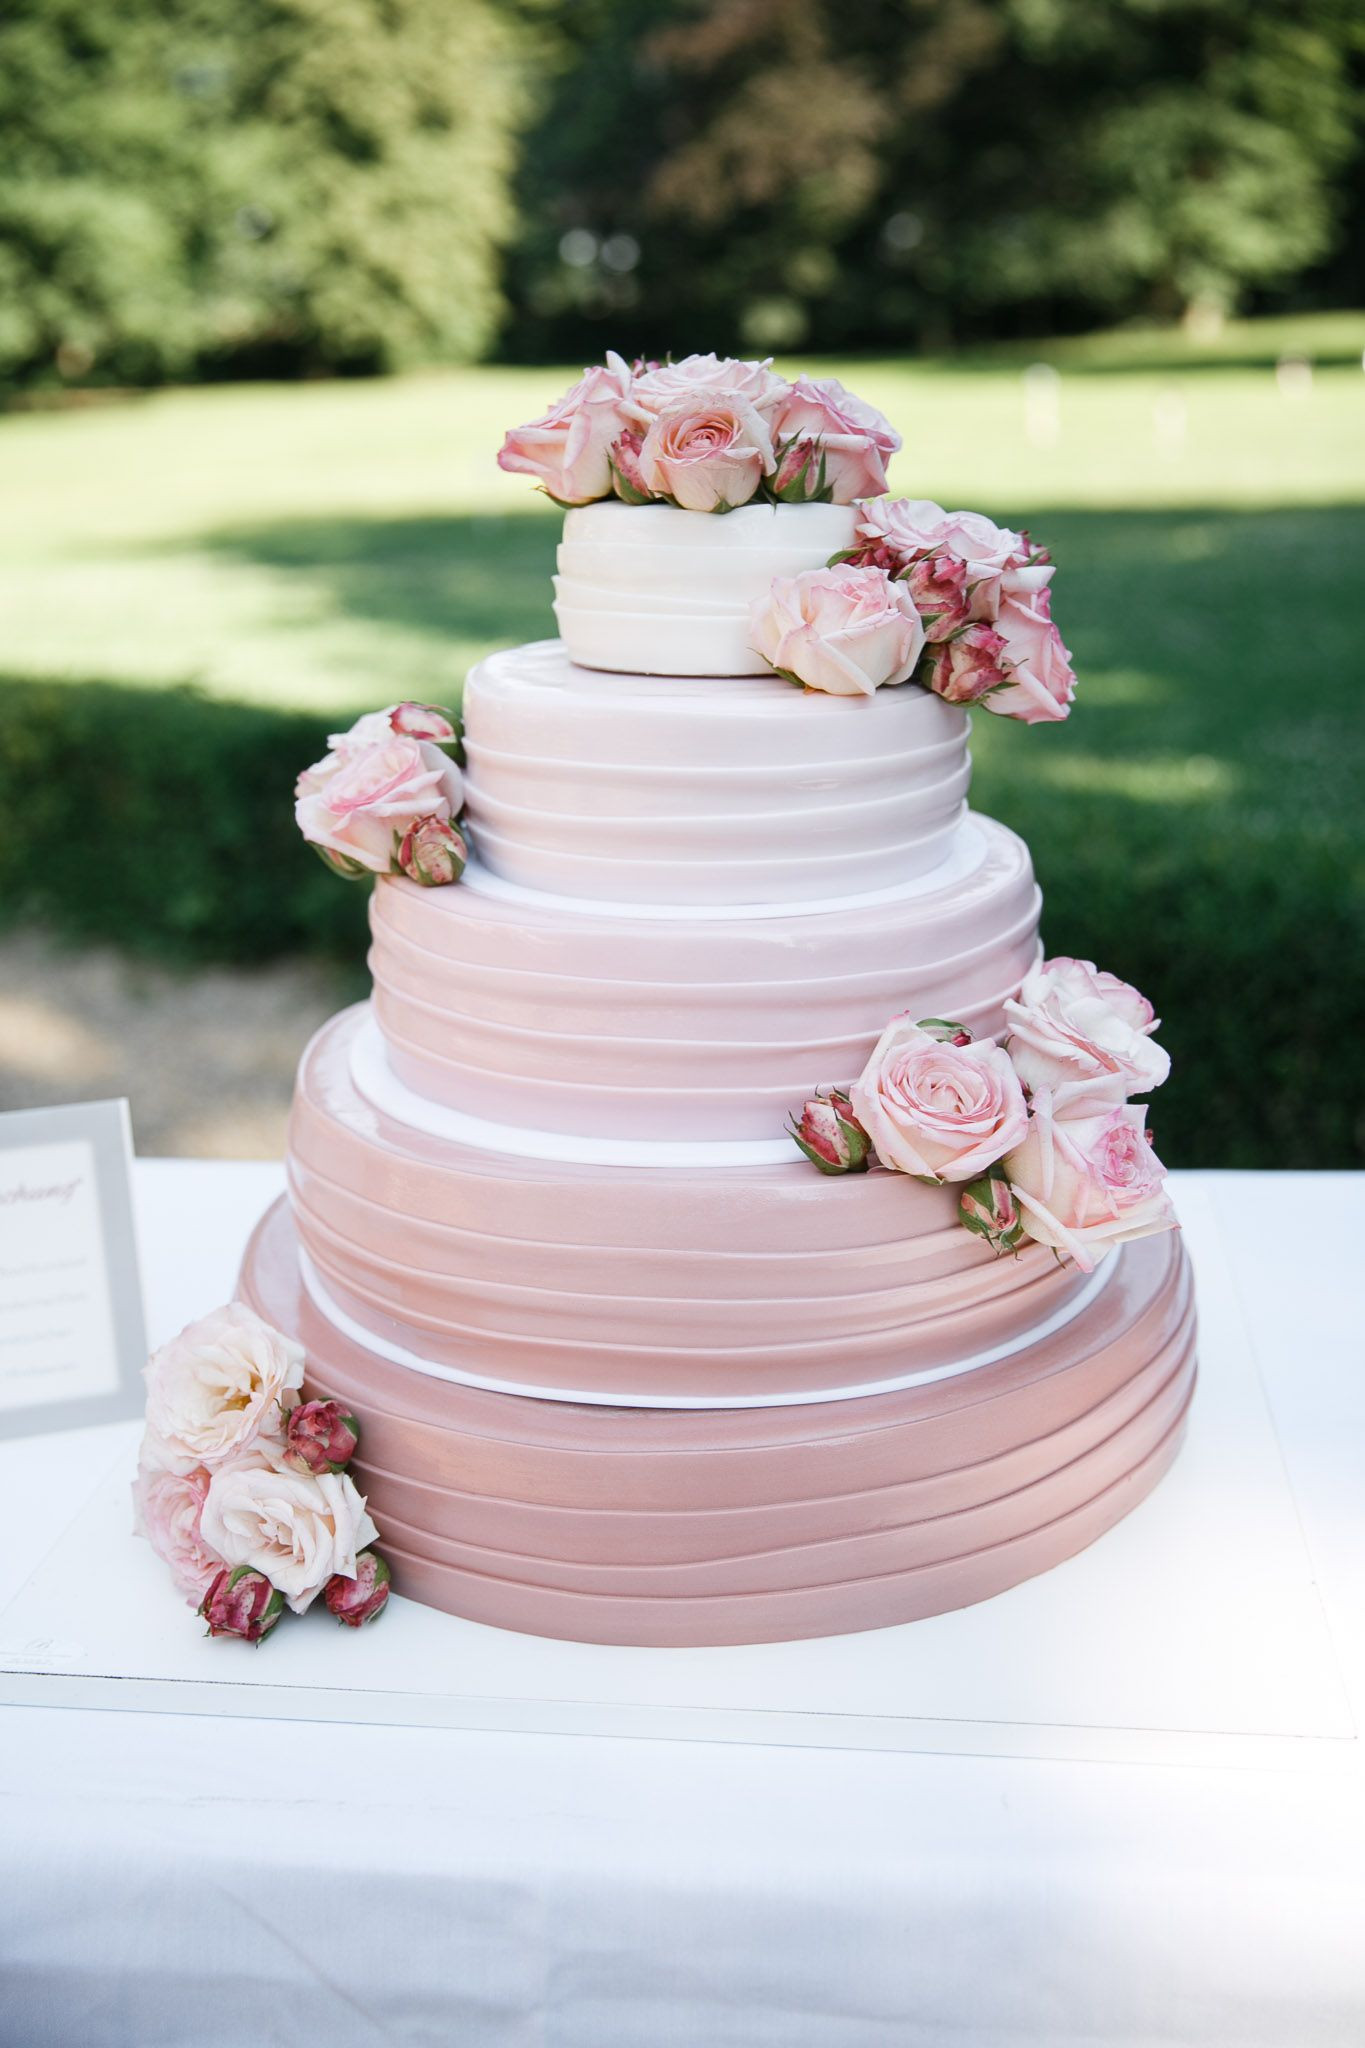 Hochzeitstorte Rosa
 wedding cake white and pink ♥ Hochzeitstorte weiss und